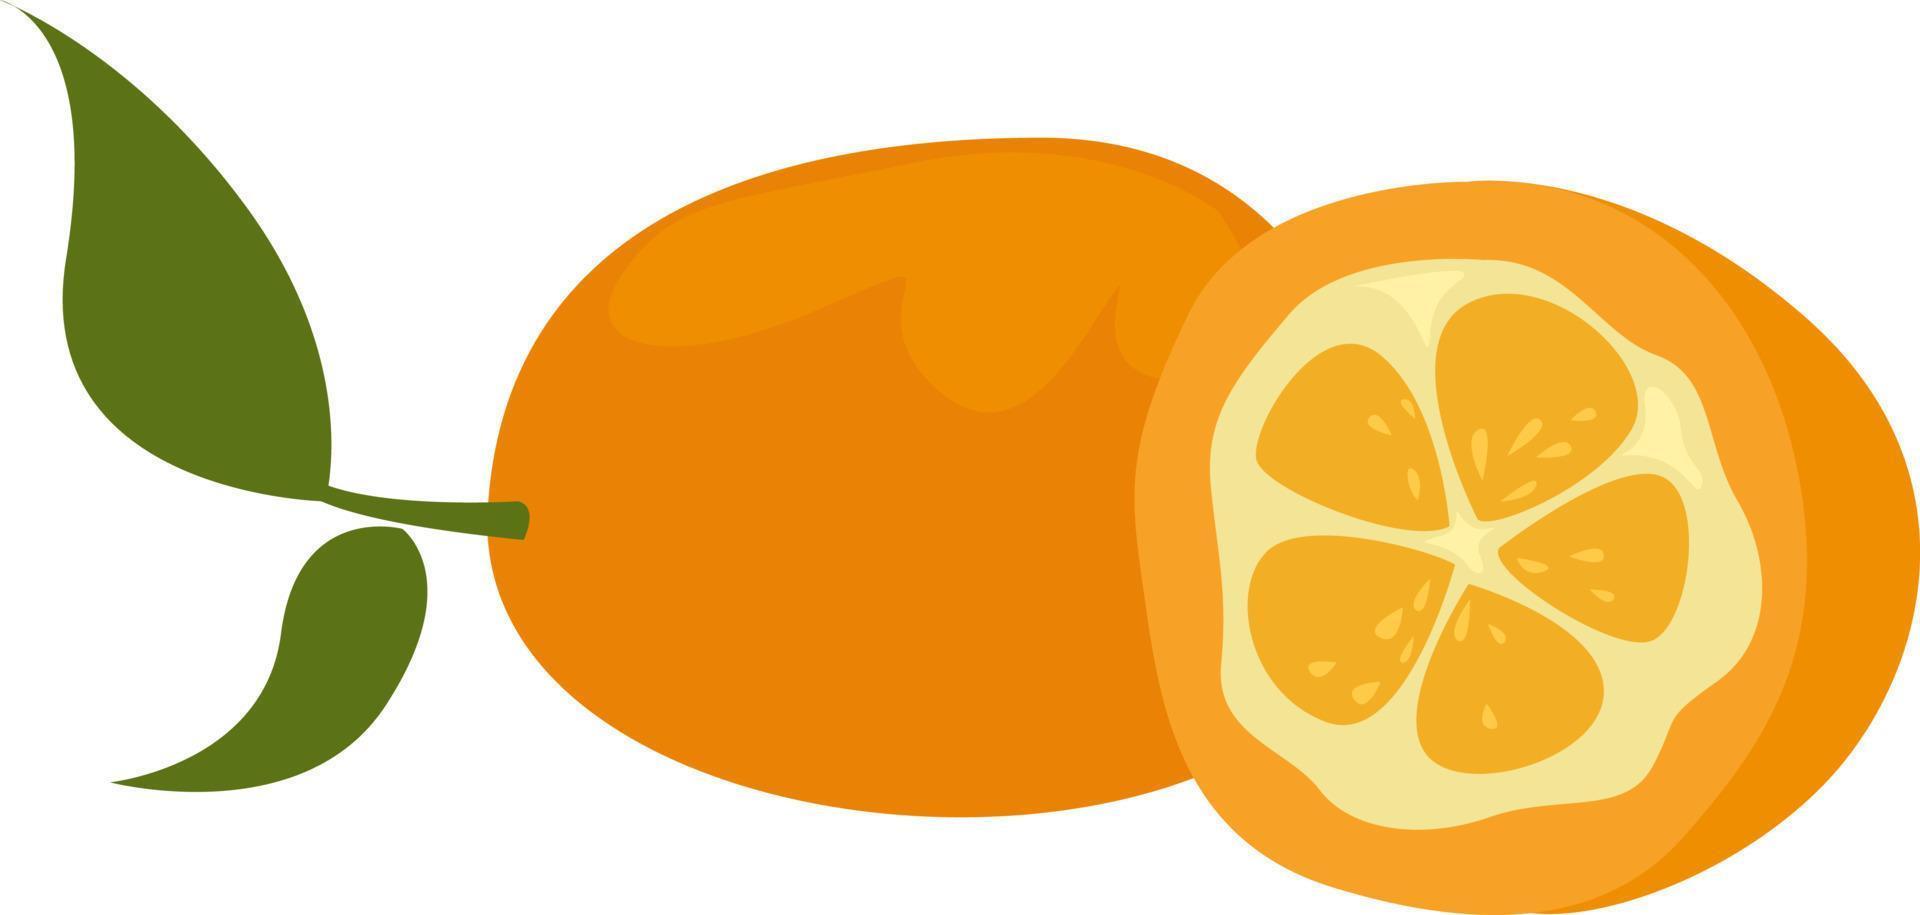 Kumquat fruit, illustration, vector on white background